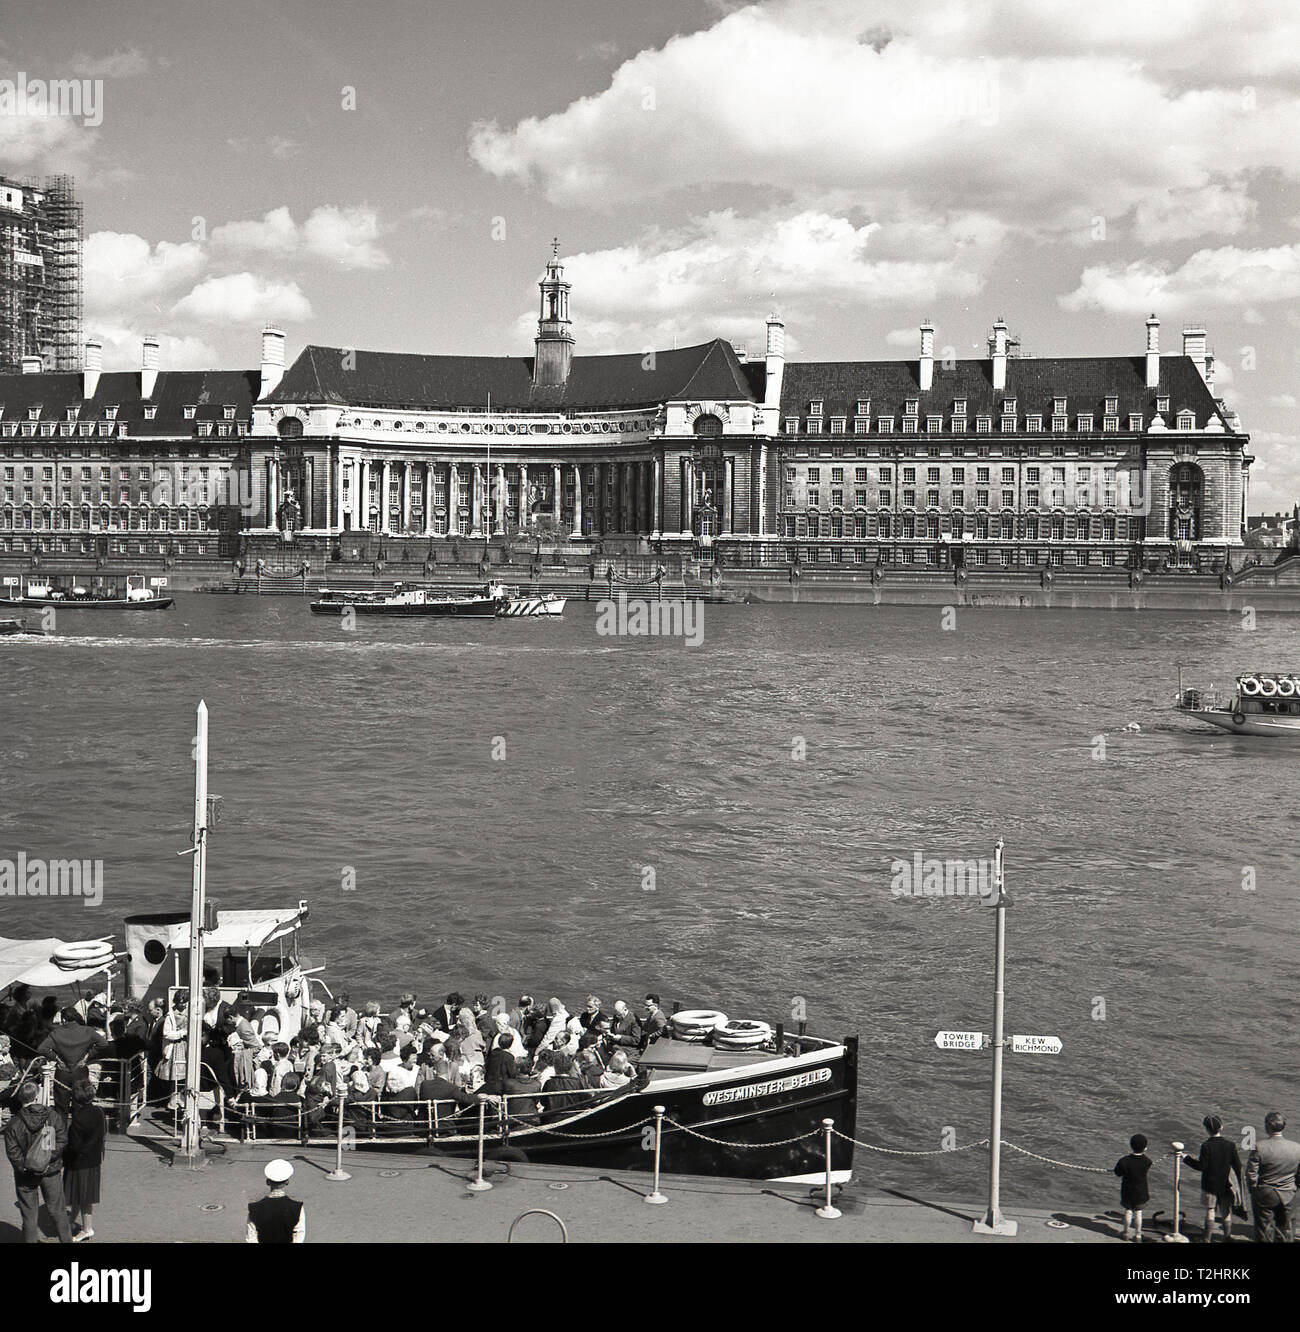 1960, historische, Bild zeigt Westminster Pier, mit Menschen auf einem touristenboot überfüllt", Westminster Belle", London, England, UK, mit der County Hall, ehemaliges Haus des London County Council (LCC) das große Gebäude am Ufer gegenüber. Stockfoto